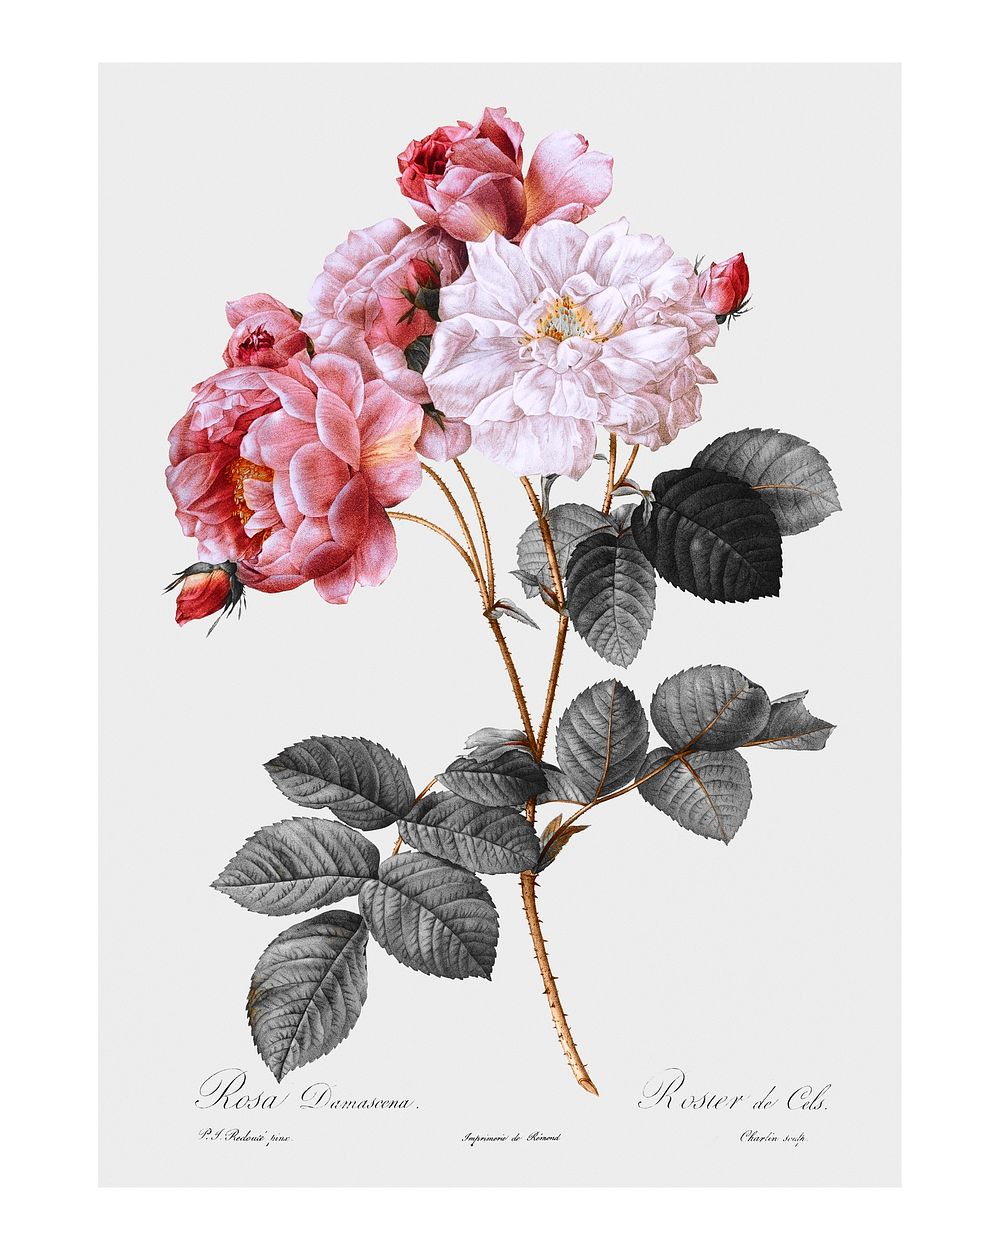 Vintage pink damask rose illustration wall art print and poster design remix from original artwork.